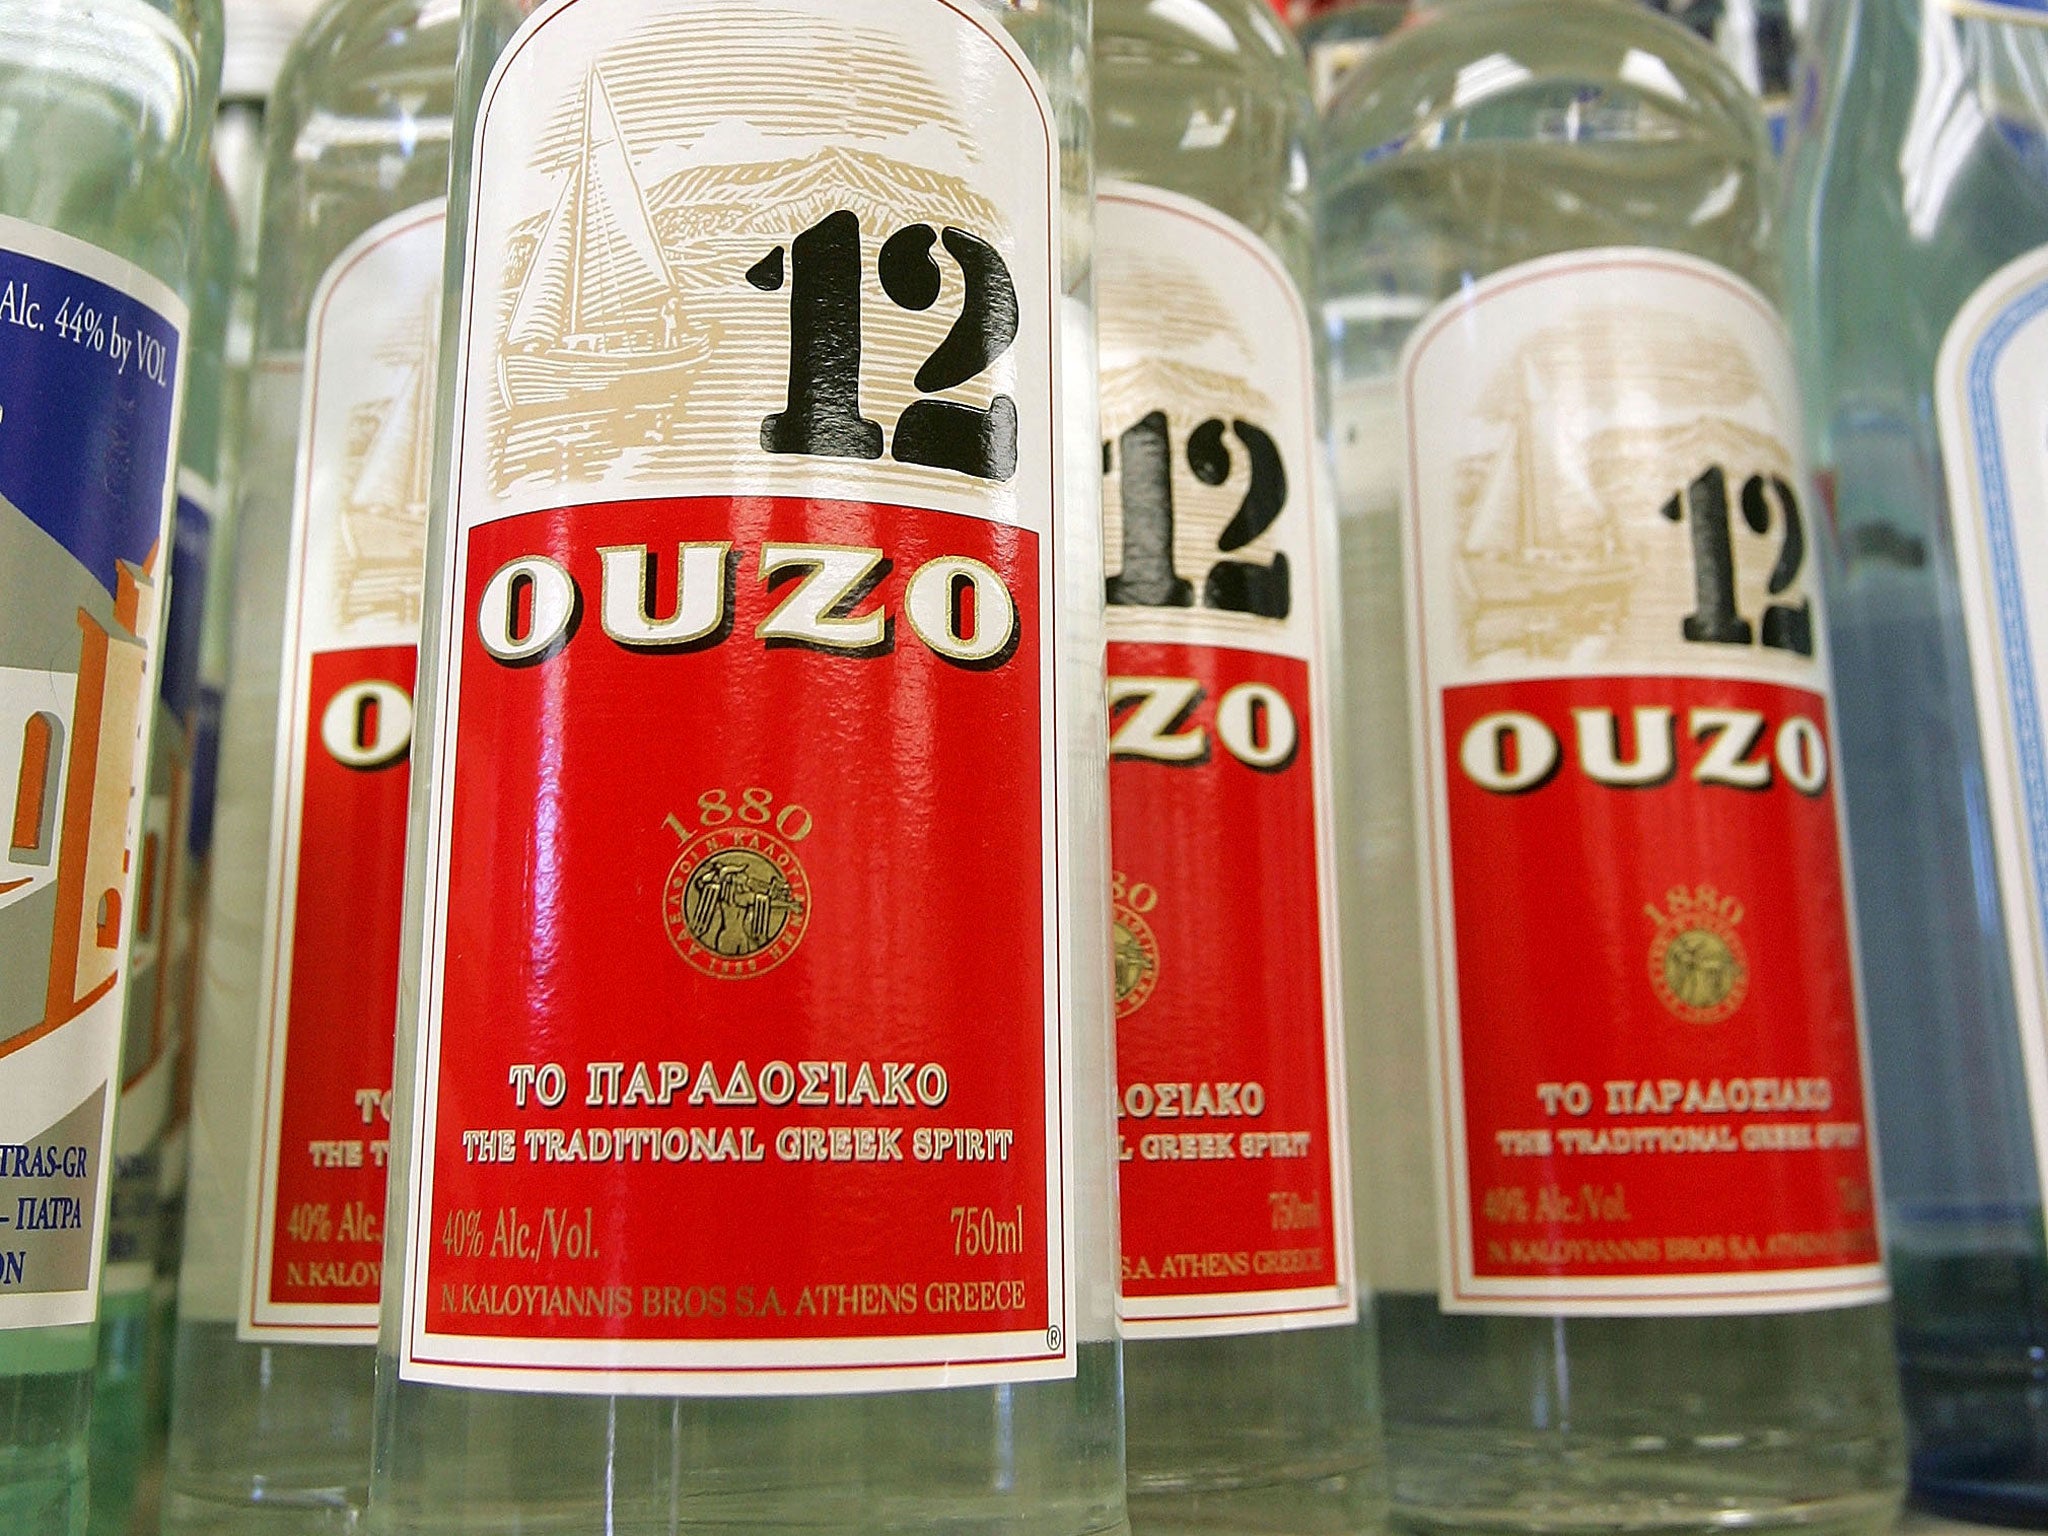 Duty-free booze: How to use up dodgy holiday spirits like ouzo, Aquavit ...